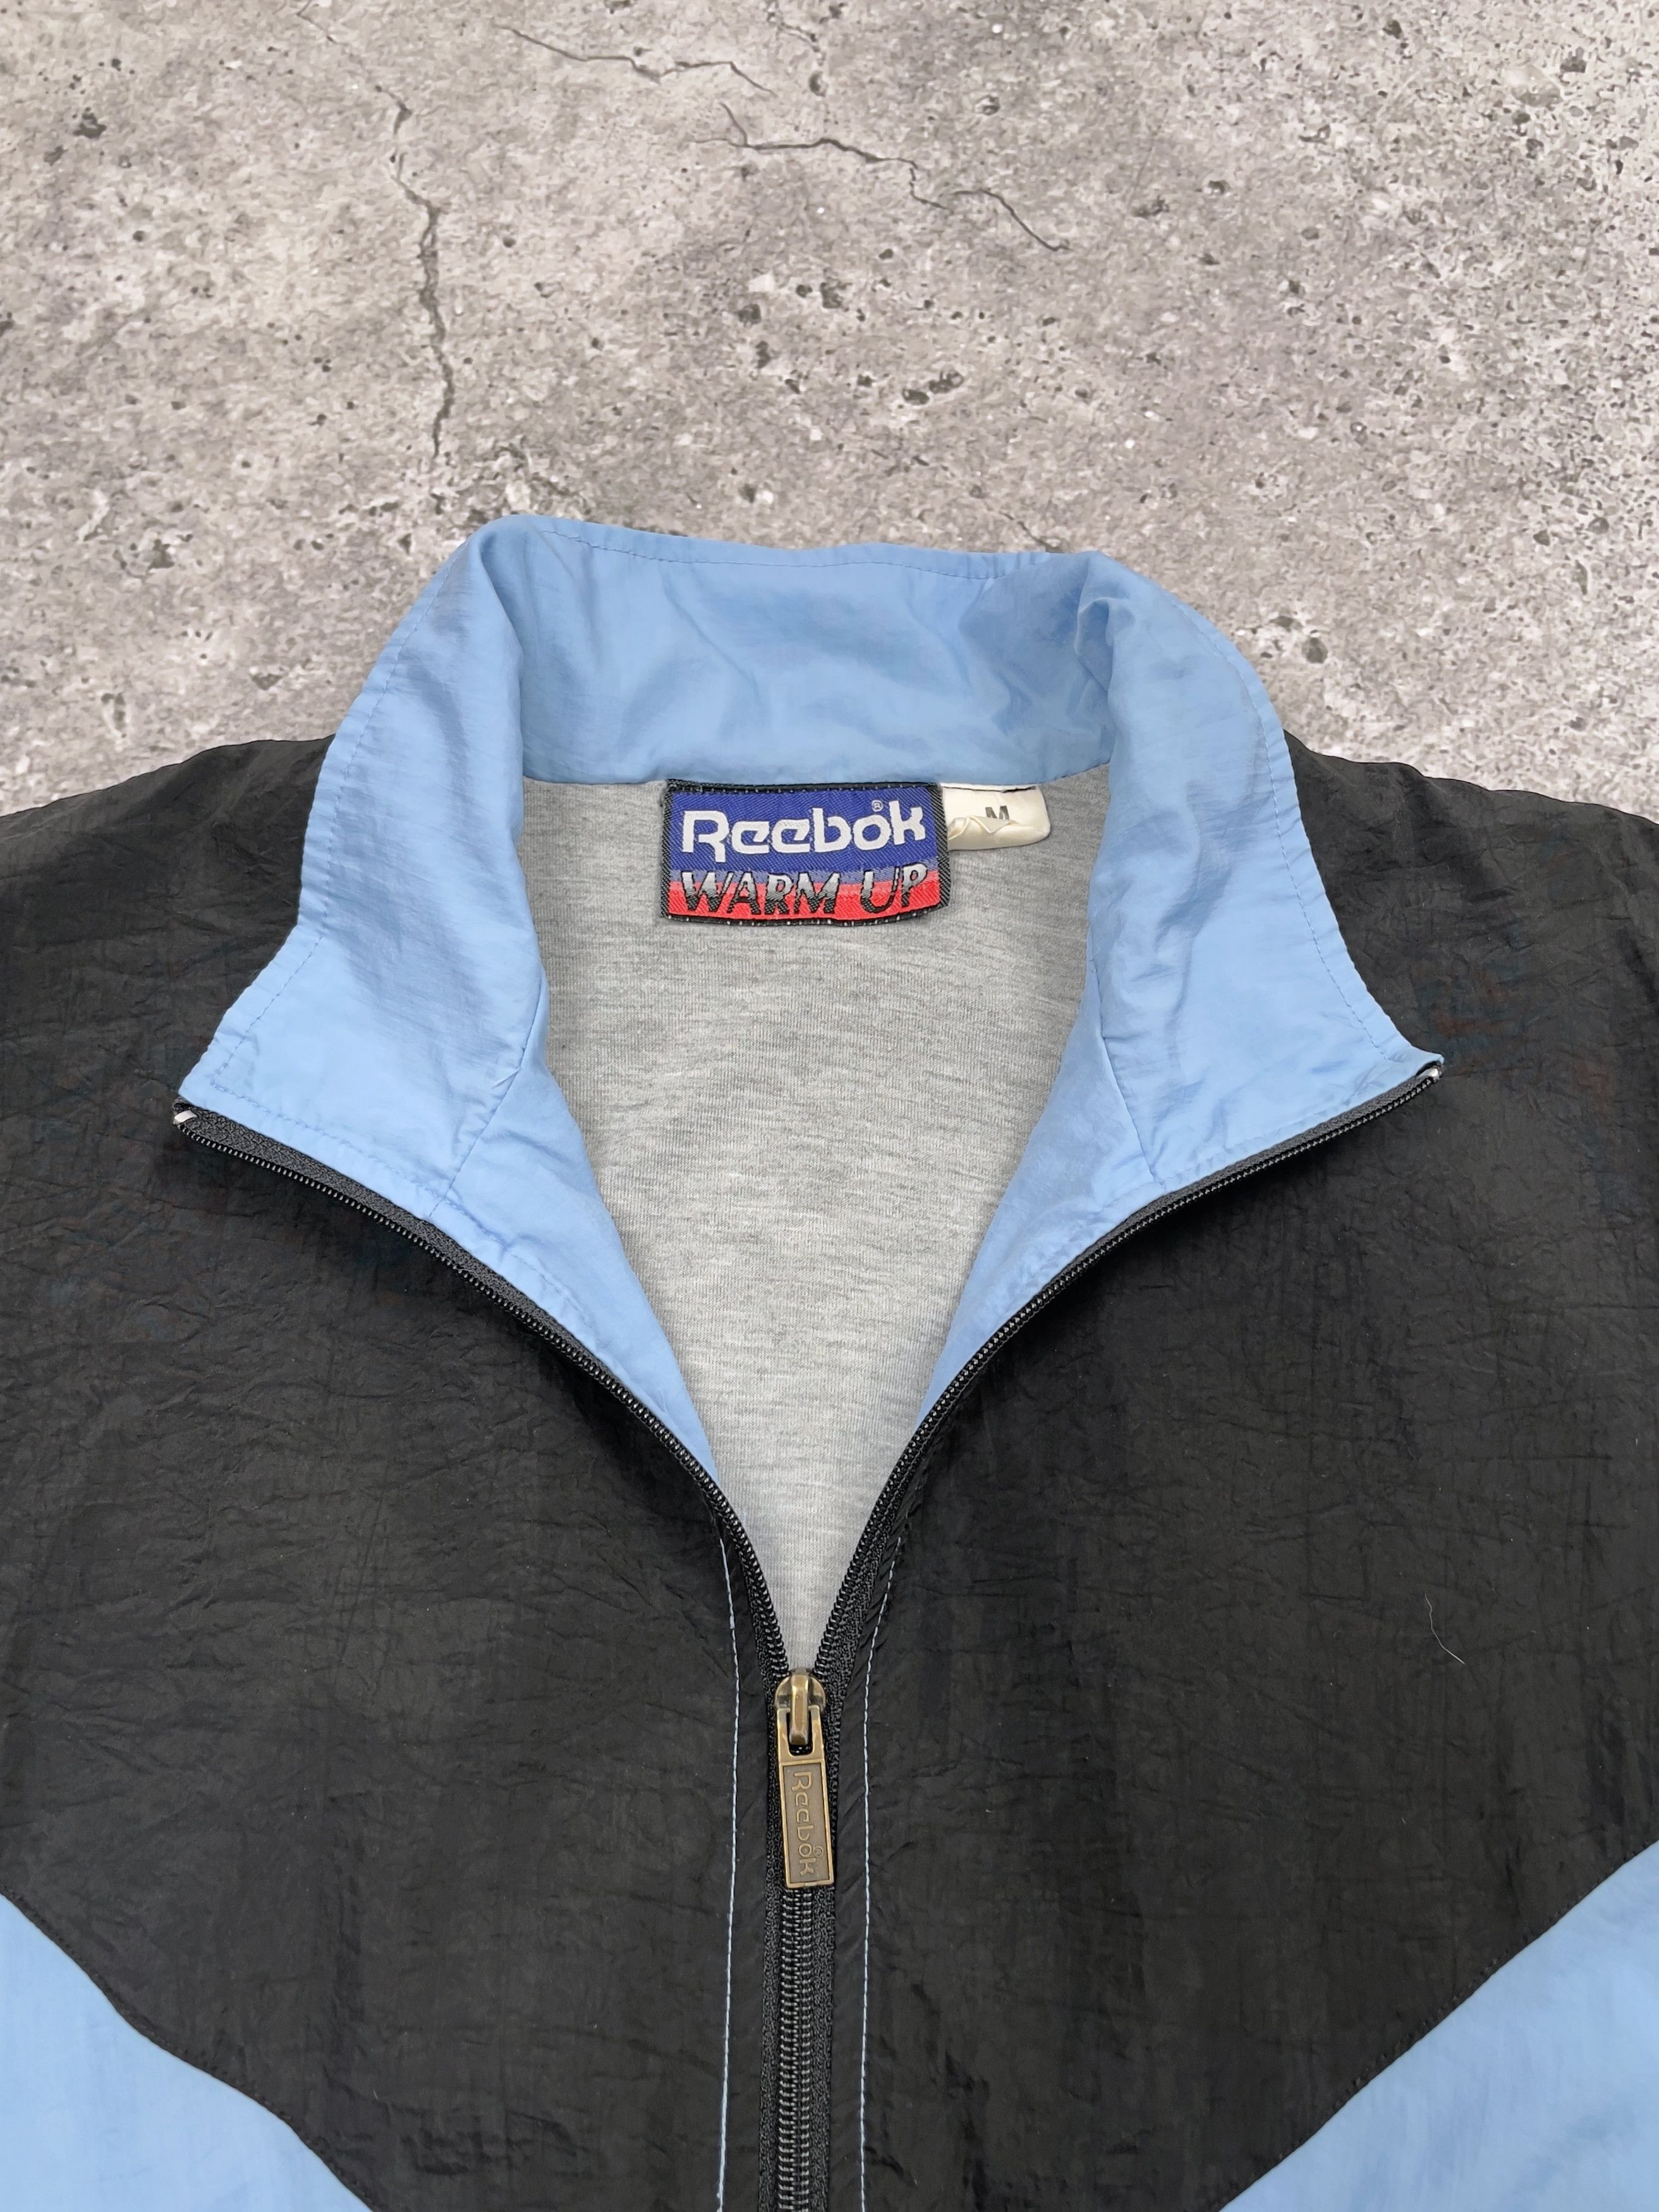 Vintage 80s Reebok Nylon Track Jacket Set Jacket + Pants Size US M / EU 48-50 / 2 - 6 Thumbnail